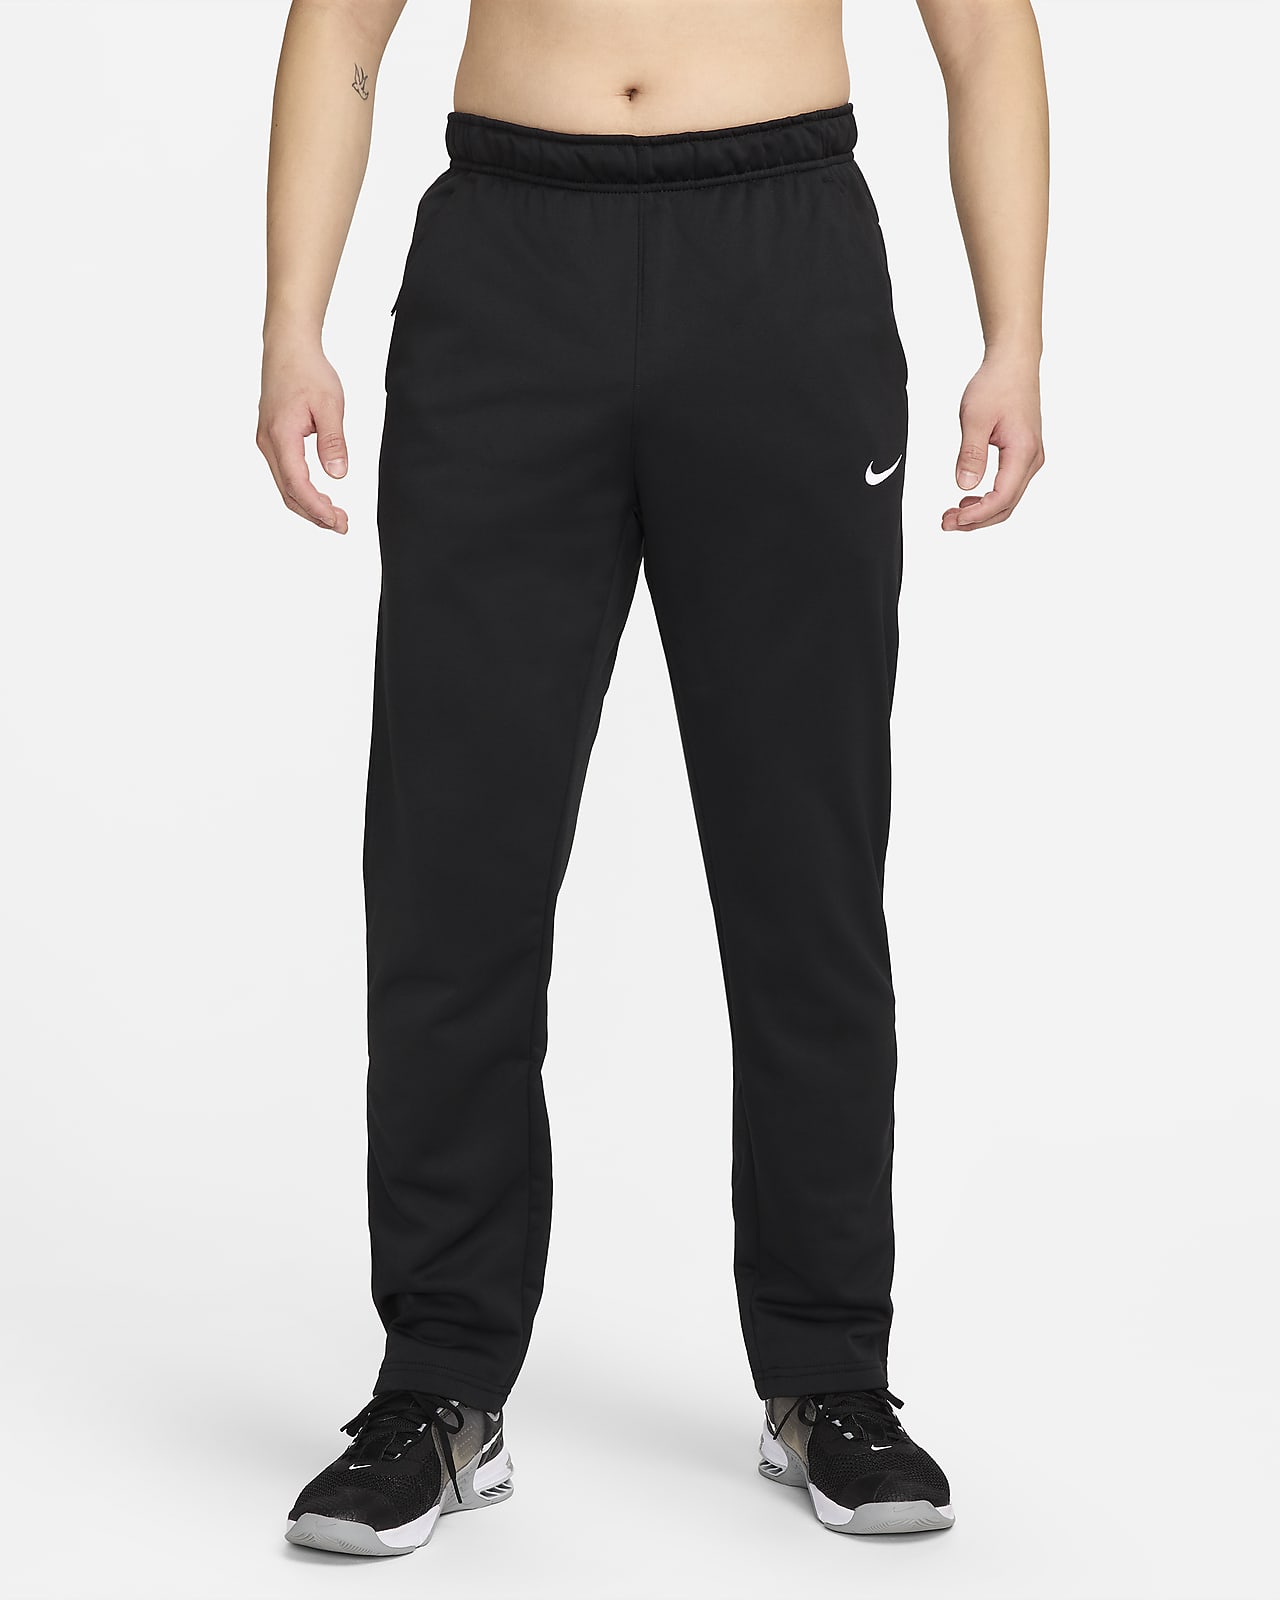 Indtil Forslag undergrundsbane Nike Therma-FIT Men's Fitness Pants. Nike JP